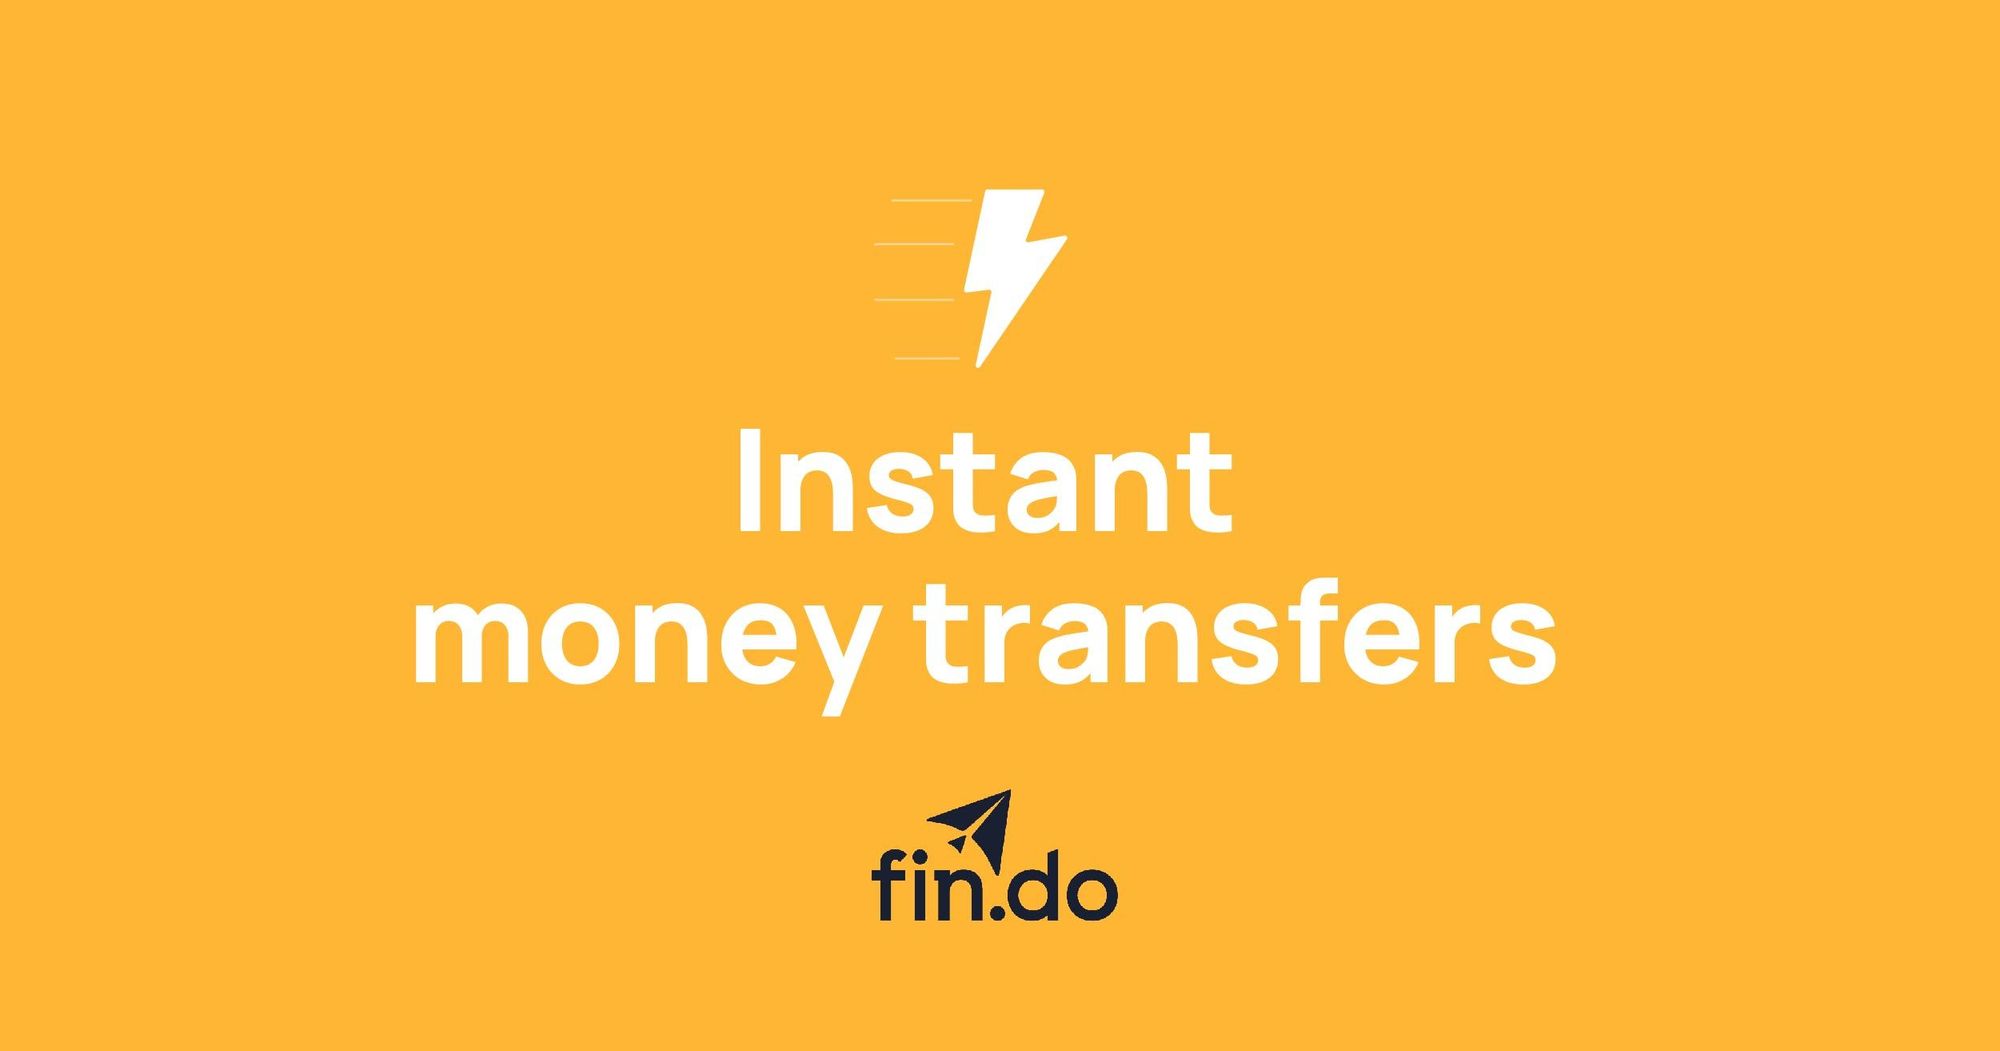 Pero, ¿qué es una transferencia de dinero instantánea?